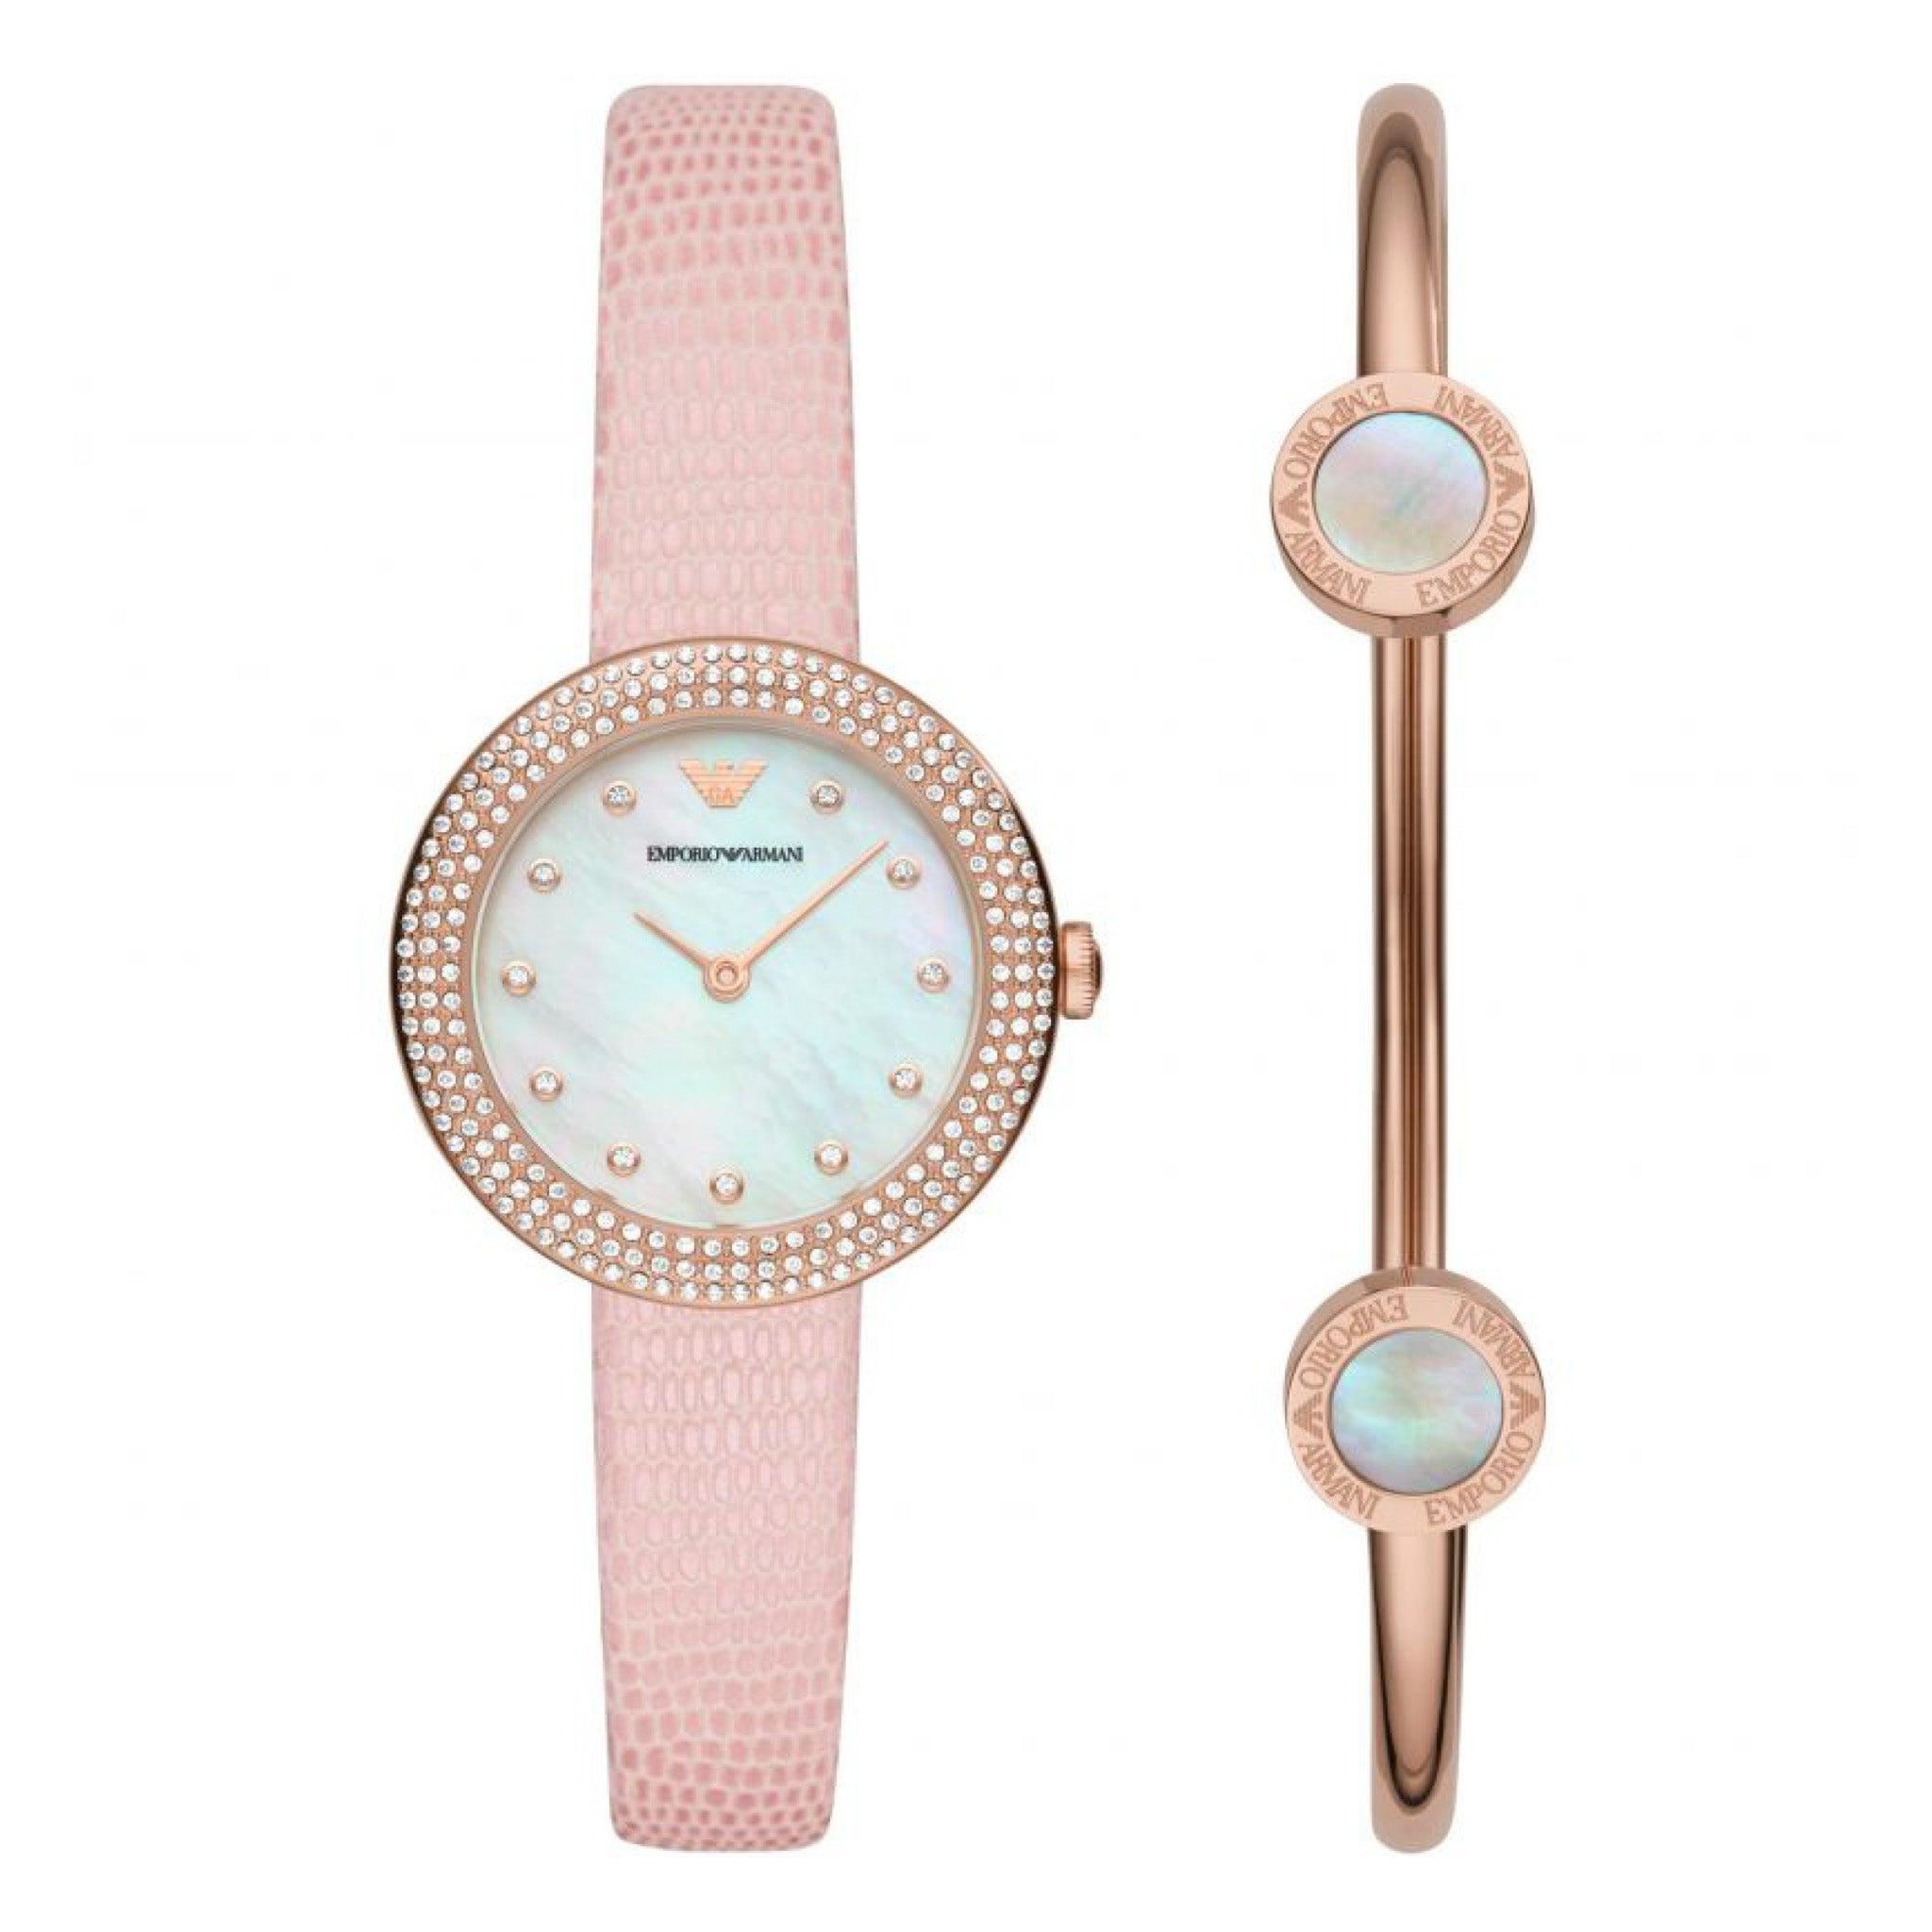 ساعة نسائية مع بلاك جلد وردي امبوريو ارماني Emporio Armani Two-Hand Pink Leather Watch And Bracelet Set - Ar80061set